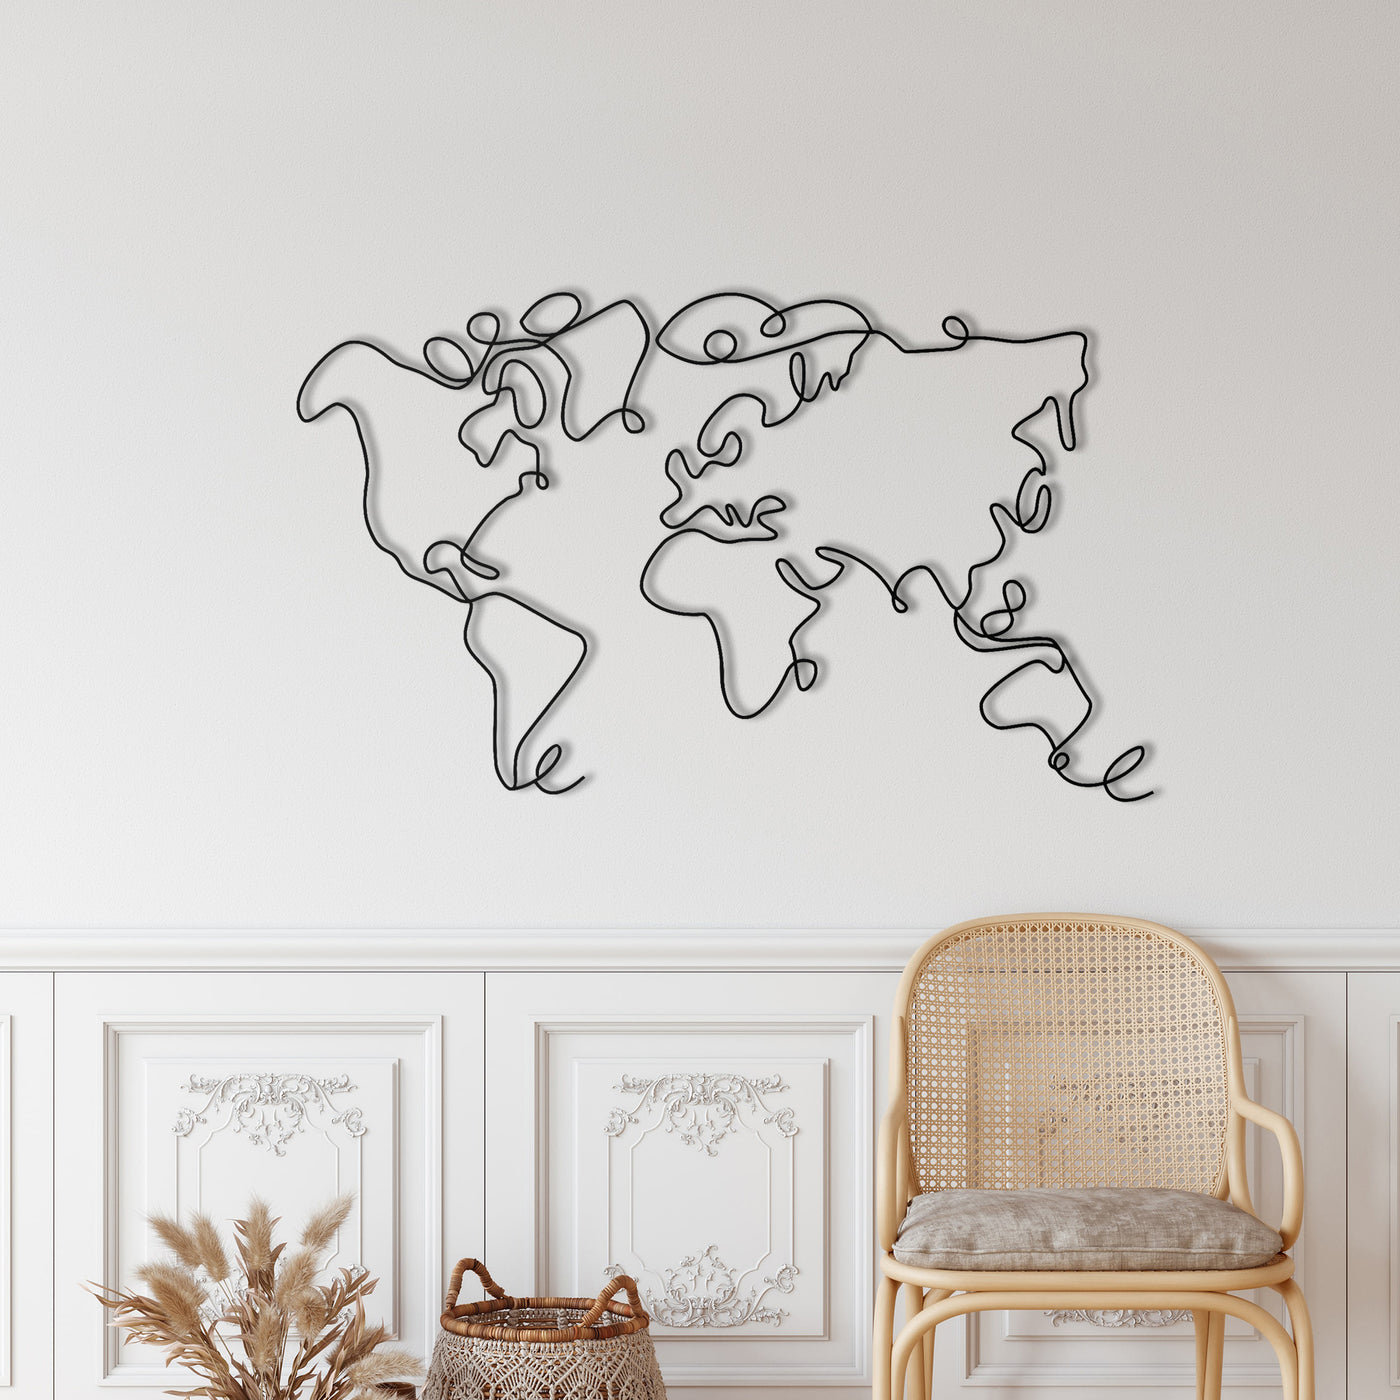 World Map Metal Wall Art